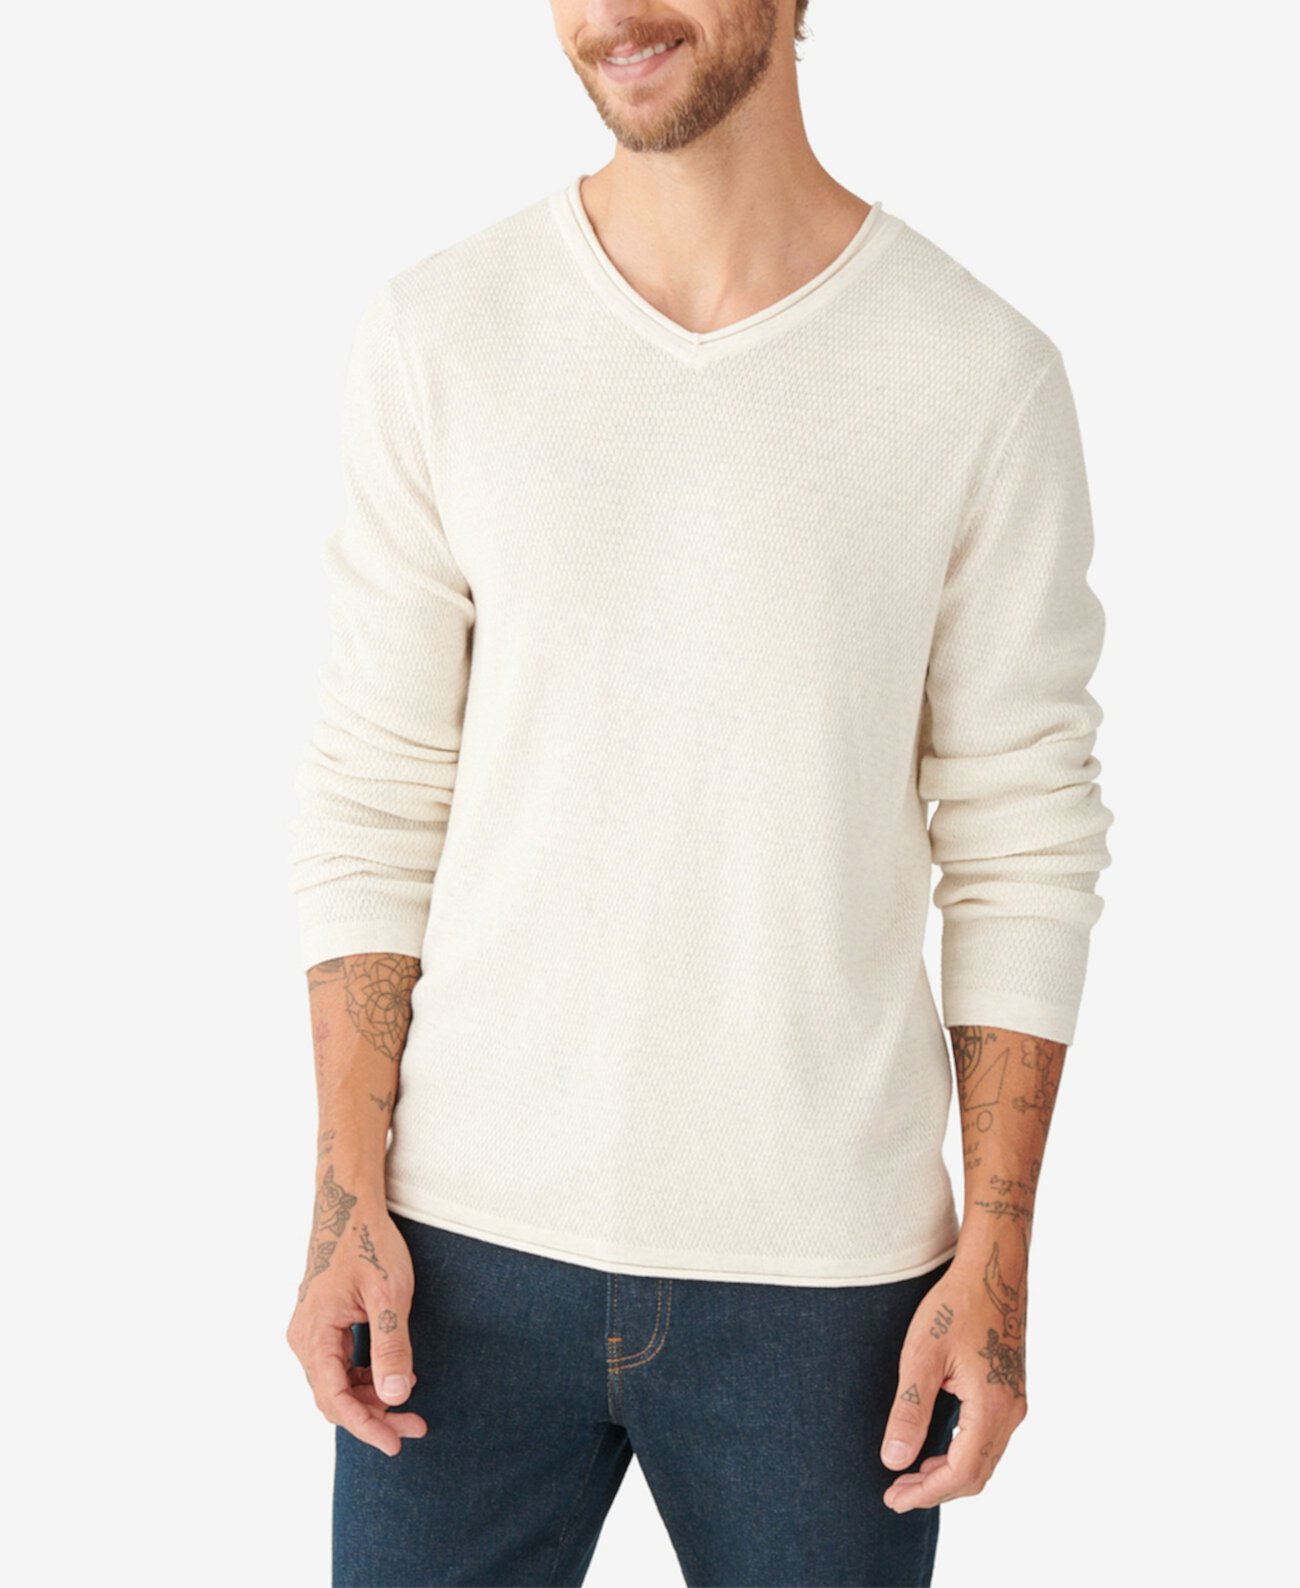 Мужской свитер полусреднего веса с V-образным вырезом Lucky Brand